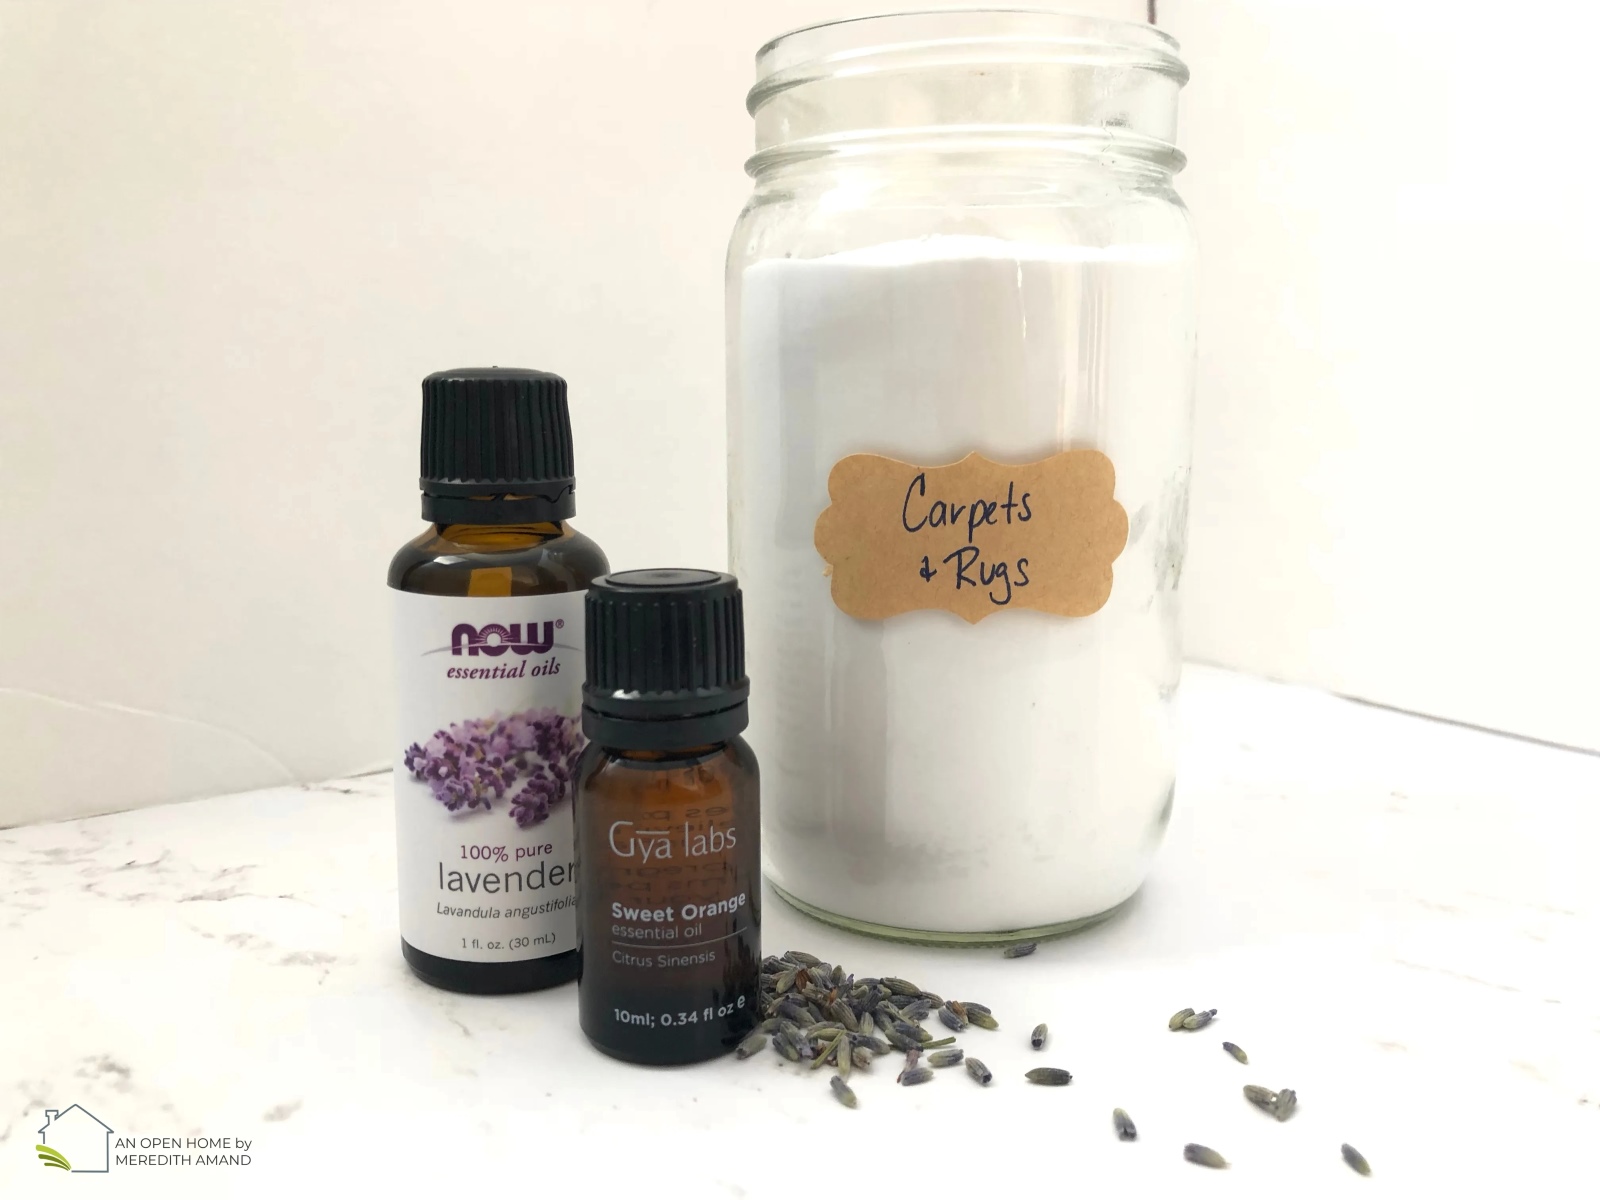 How Do You Make A Room Deodorizer With Essential Oils